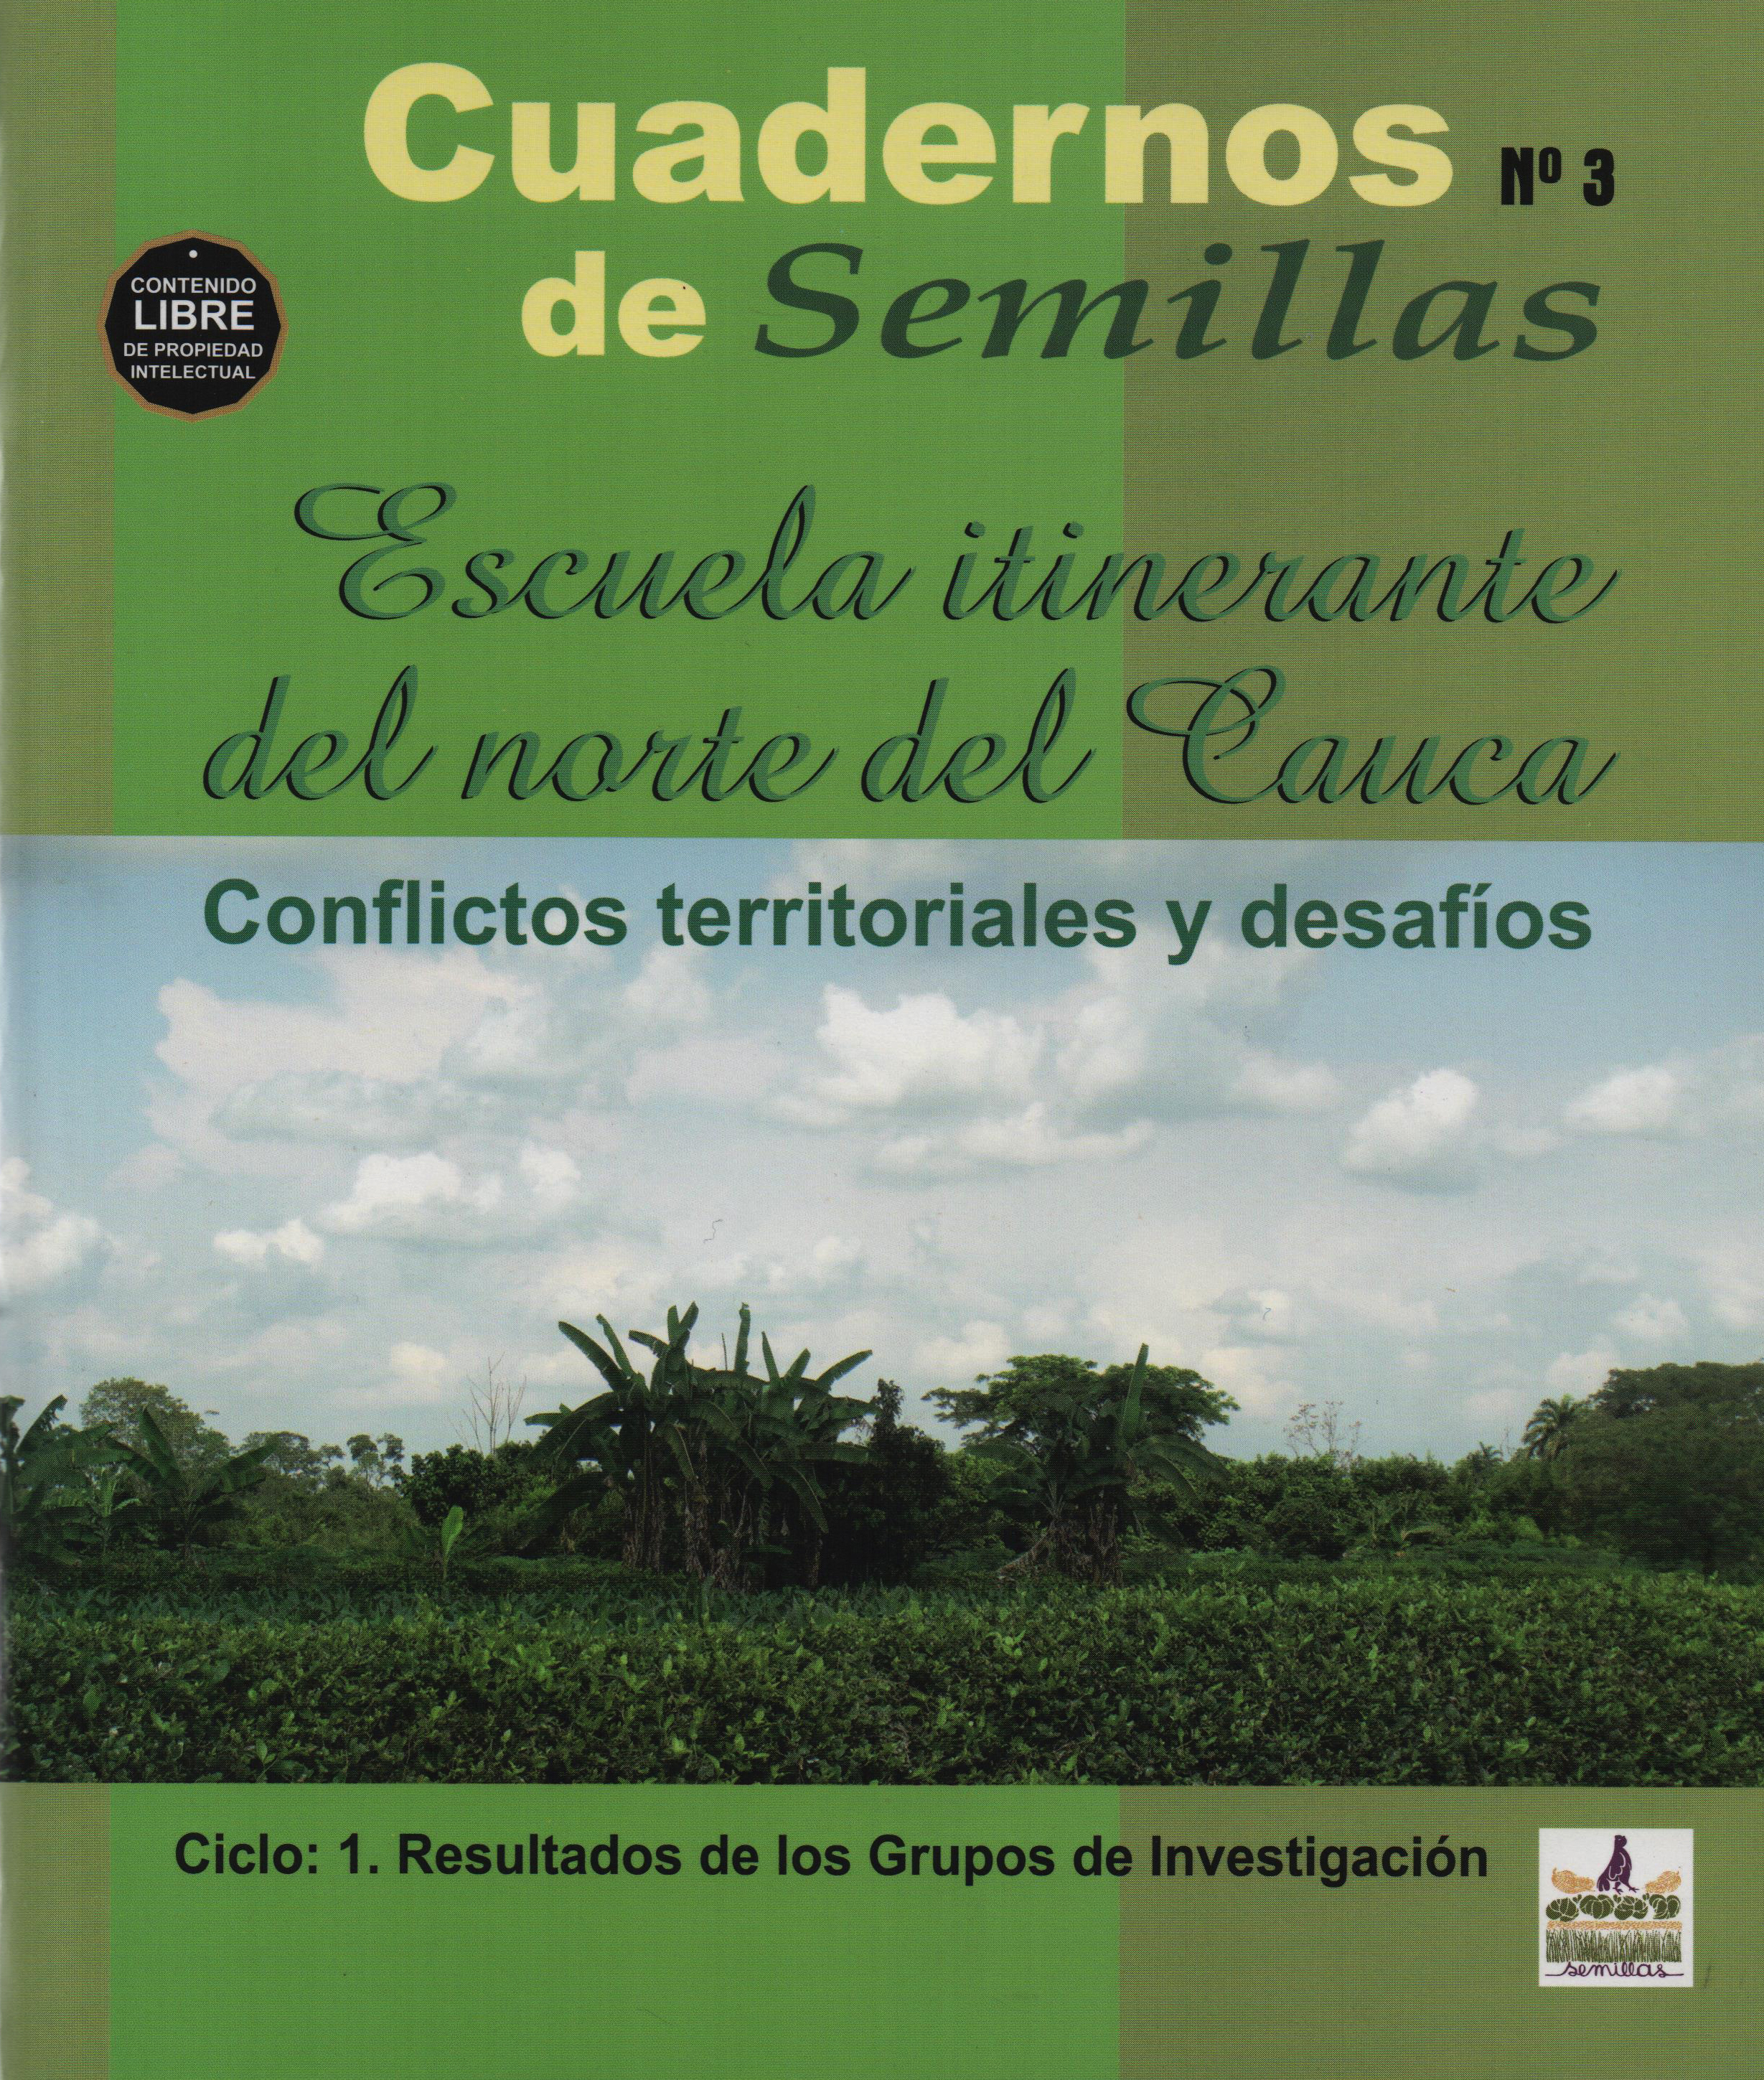 Gráfica alusiva a Cuaderno No. 3. Escuela itinerante del norte del Cauca. Conflictos territoriales y desafíos